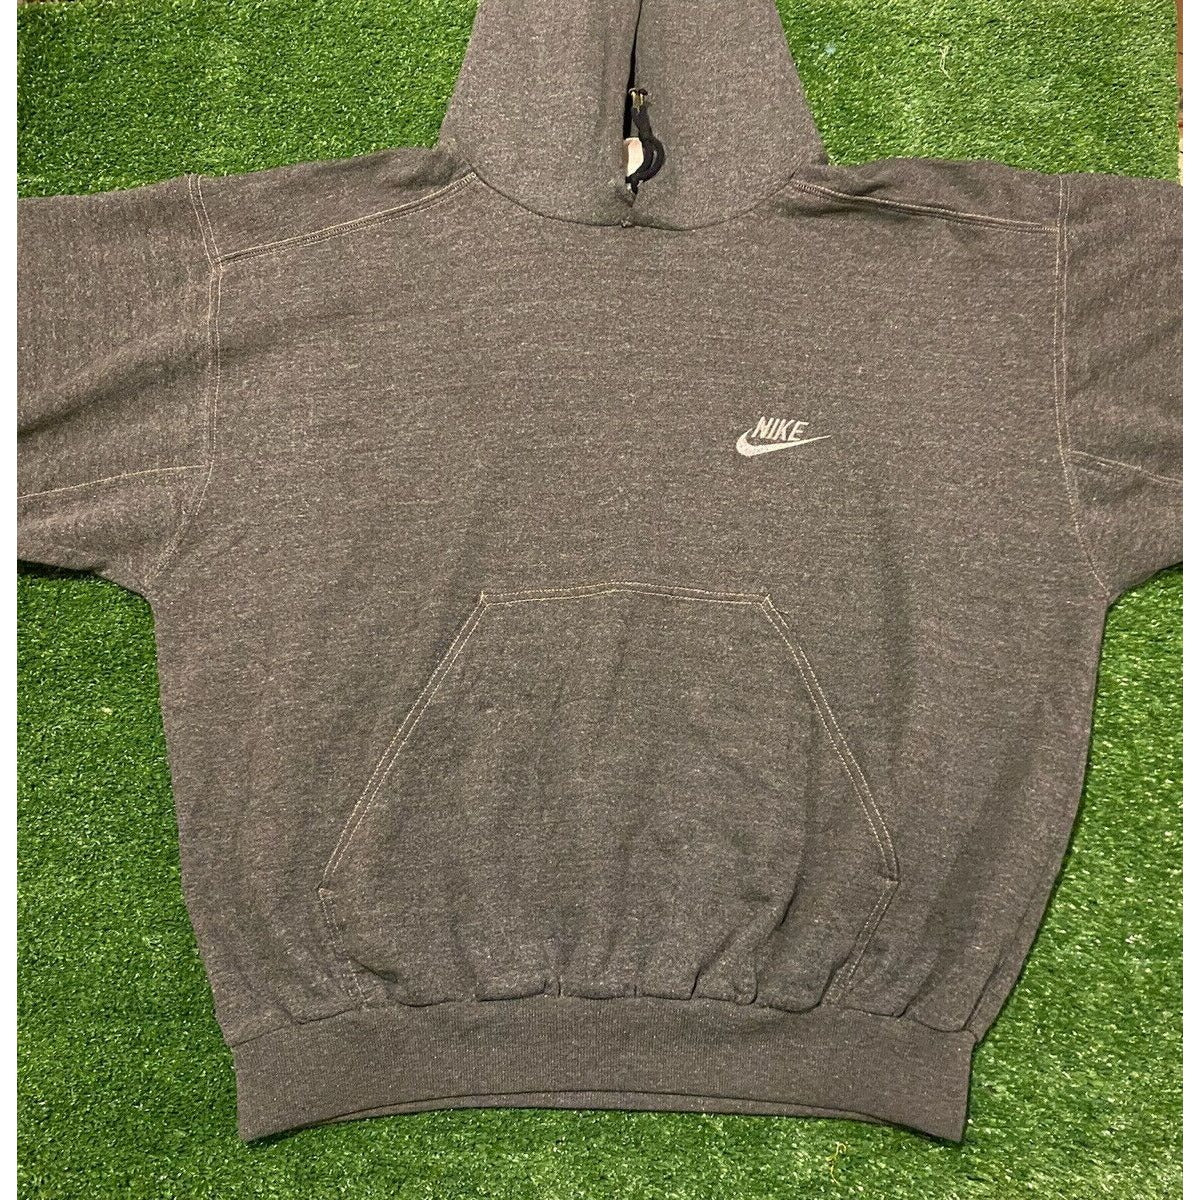 Vintage Nike Air Swoosh 1980's 1990's hoodie sweatshirt large retro just do it